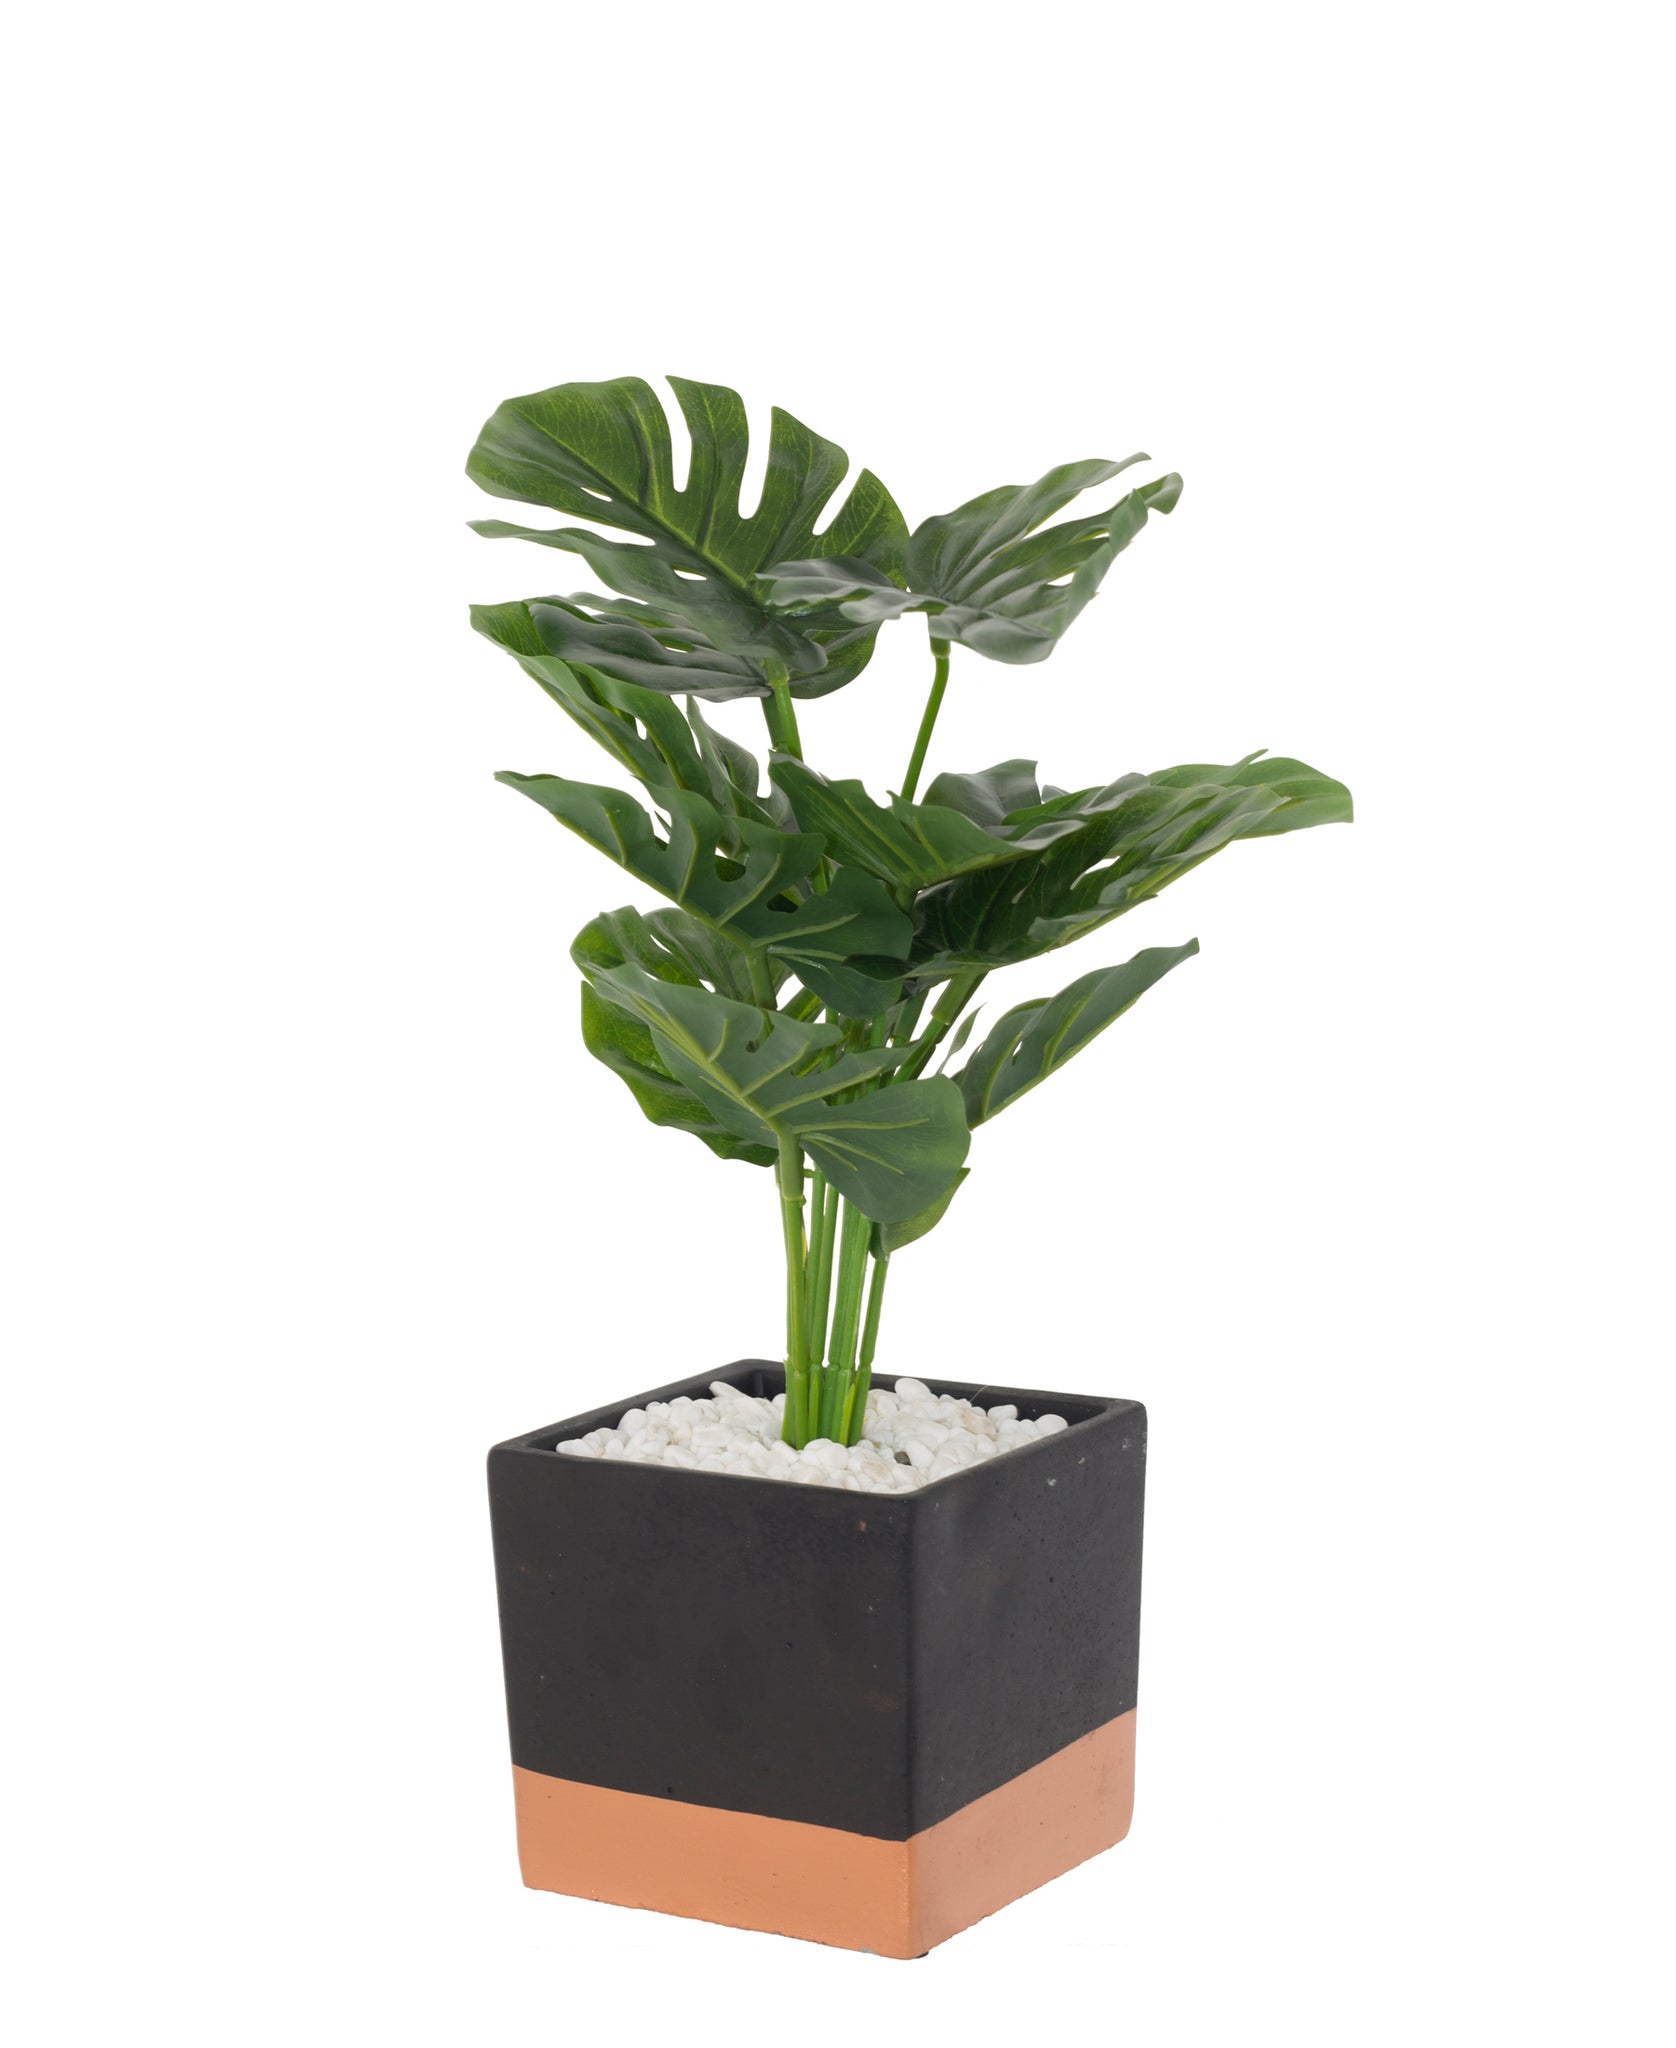 Urban Decor Delicious Square Pot Plant 37cm - Green & Black